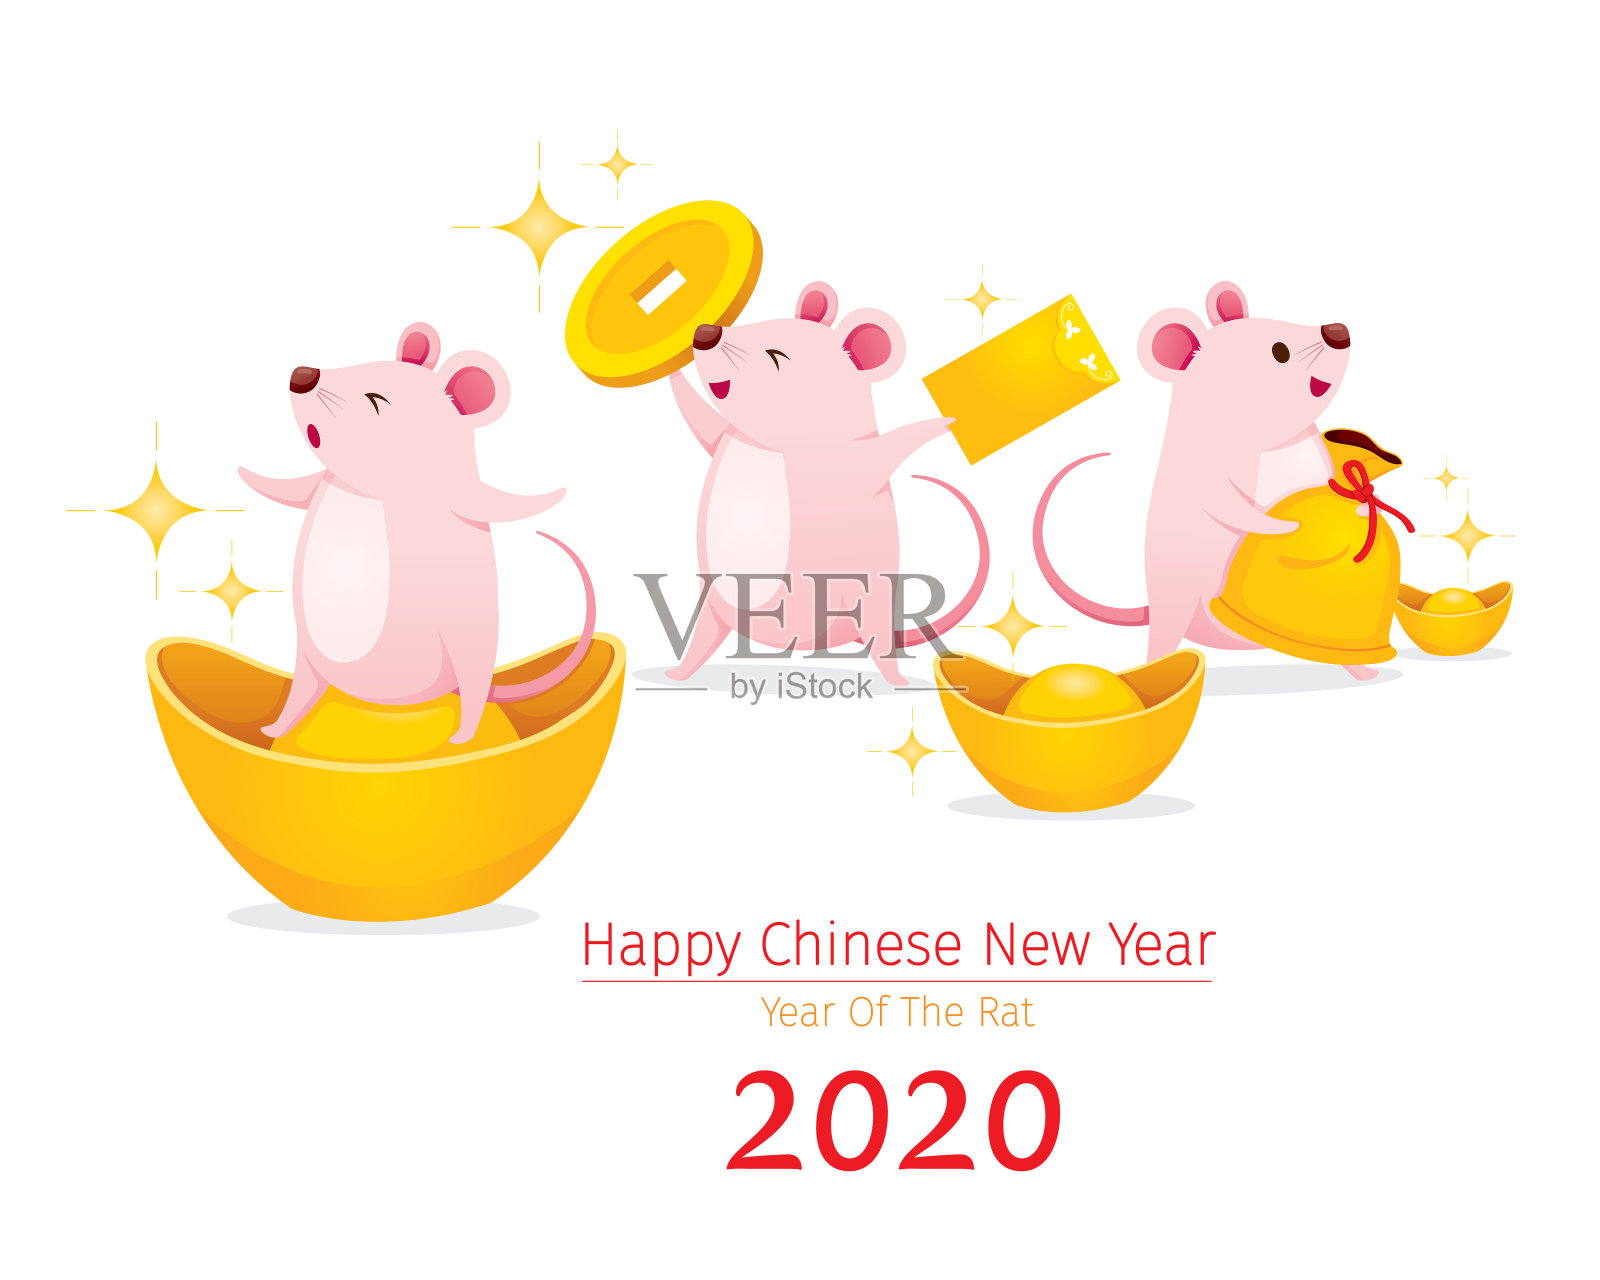 鼠乐财金，2020年鼠年春节快乐设计元素图片